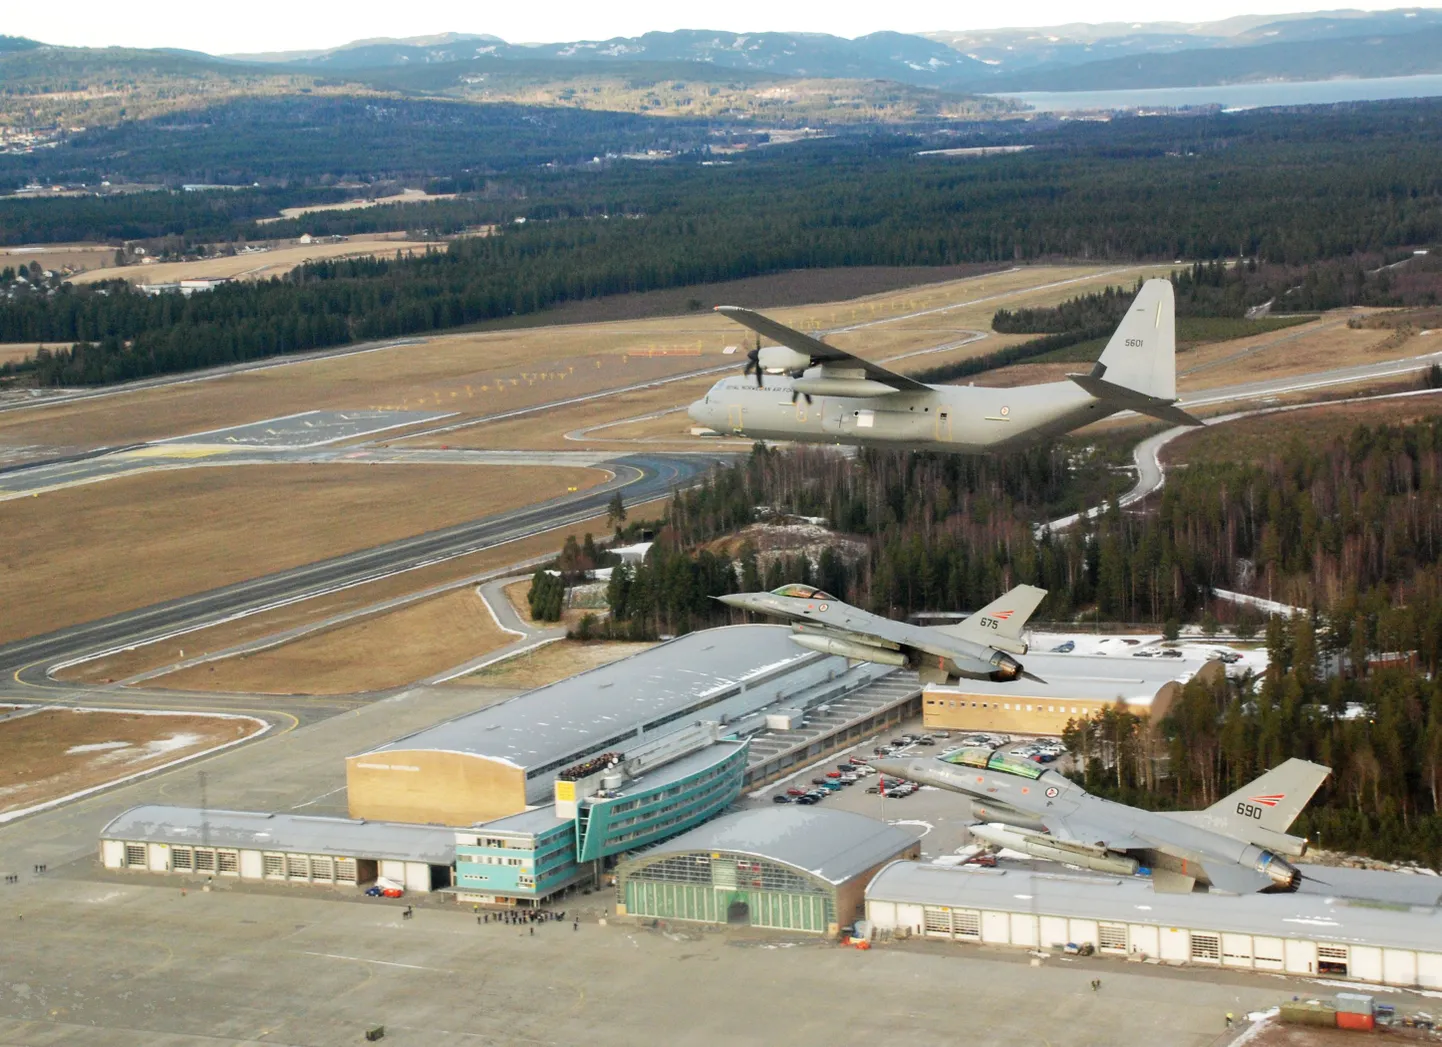 Norra sõjaväe transpordilennuk Hercules ja seda saatvad kaks F-16 hävitajat.